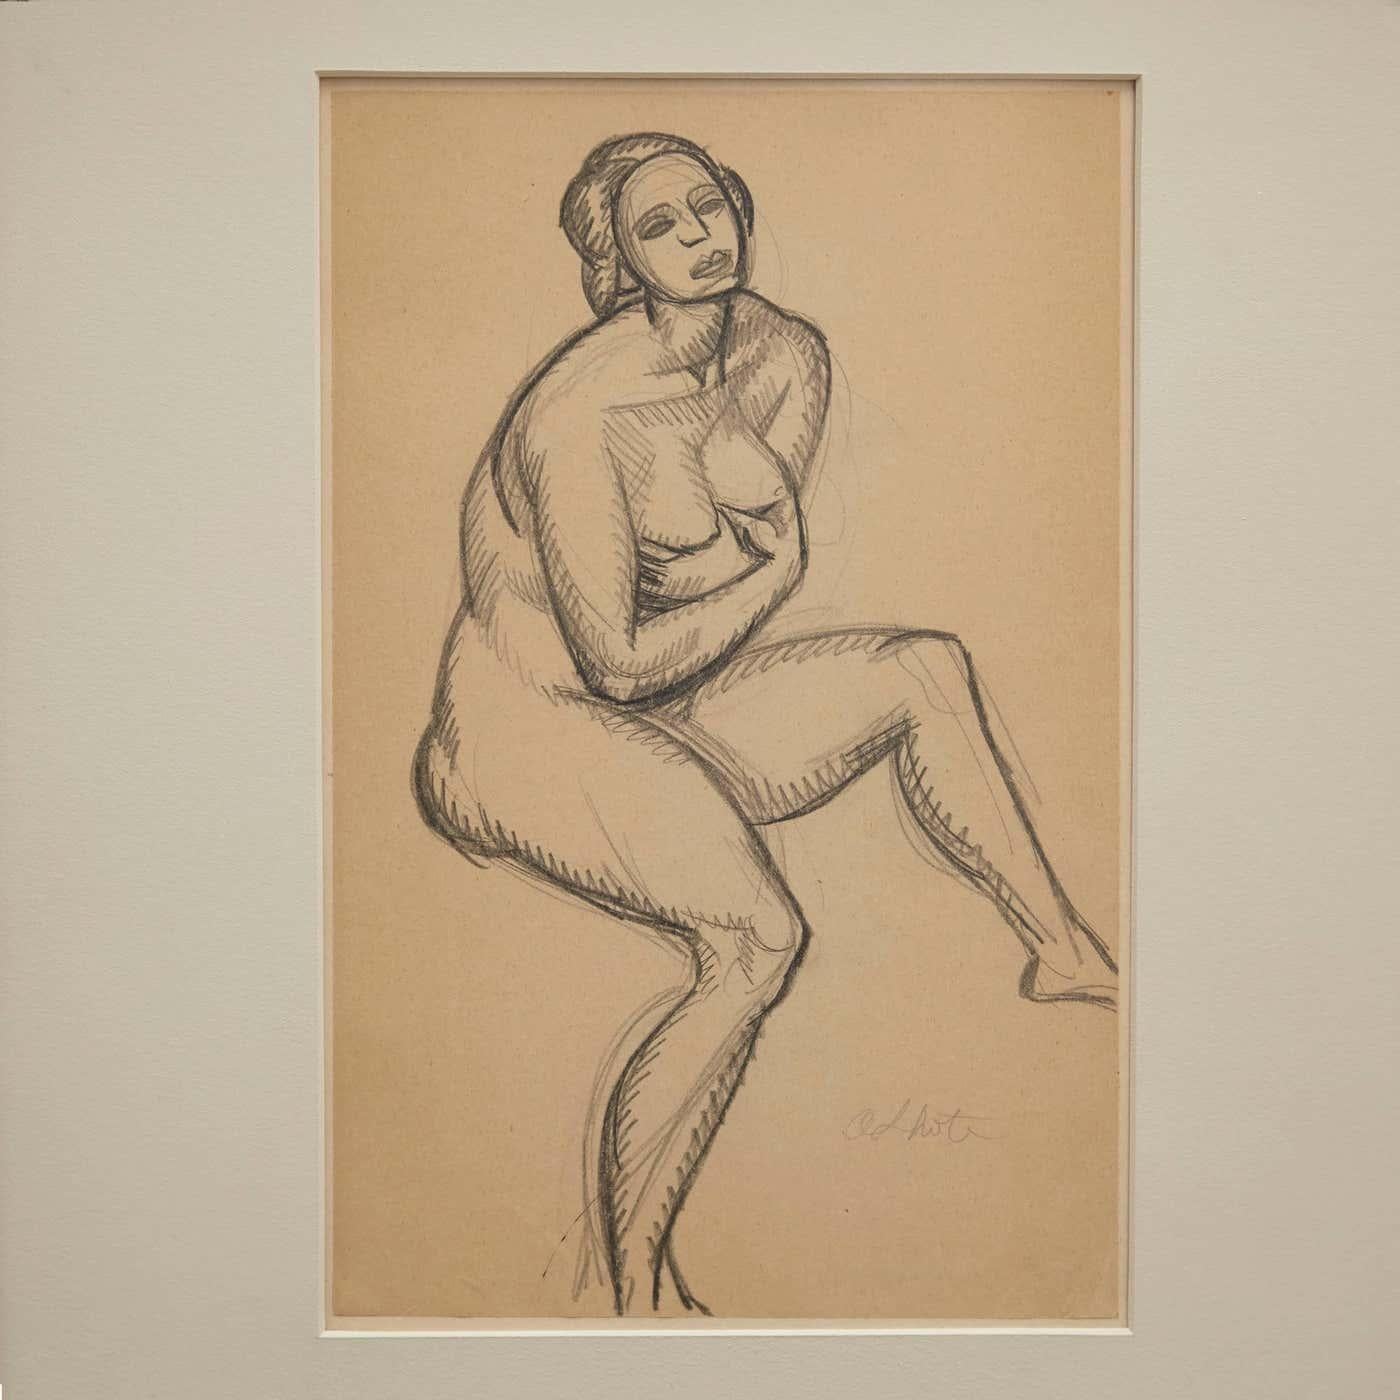 Entdecken Sie diese seltene, originale Bleistiftzeichnung des berühmten französischen kubistischen Künstlers Andre Lhote, die um 1920 entstand. Als eindrucksvolles Beispiel für die Kunst der Jahrhundertmitte zeigt dieses fesselnde Werk Lhotes